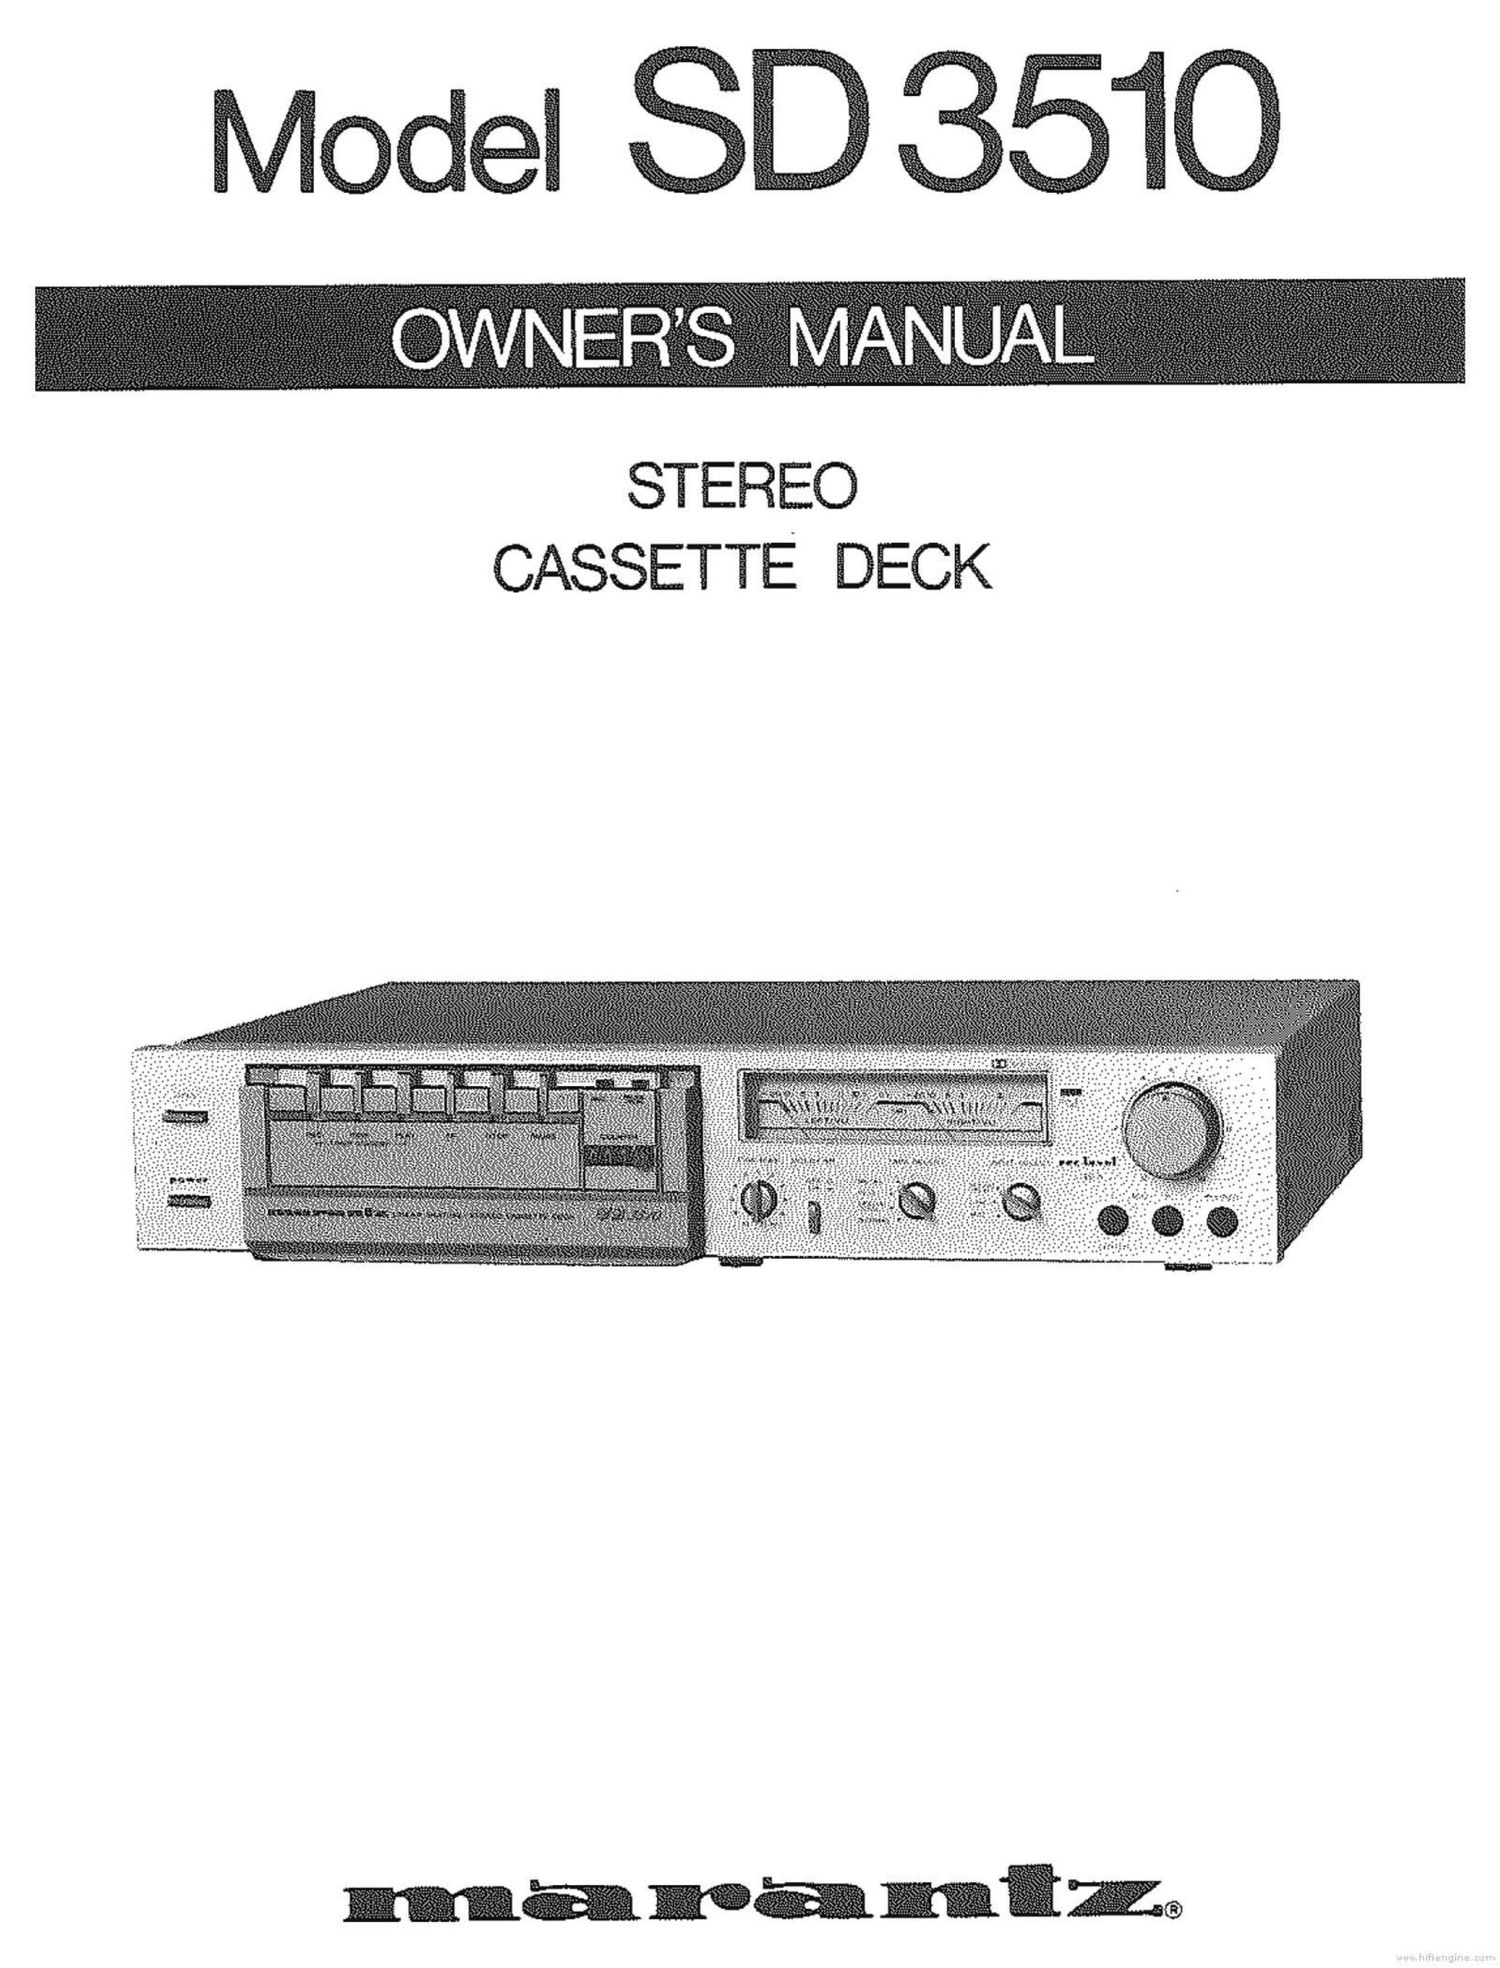 Marantz SD 3510 Owners Manual